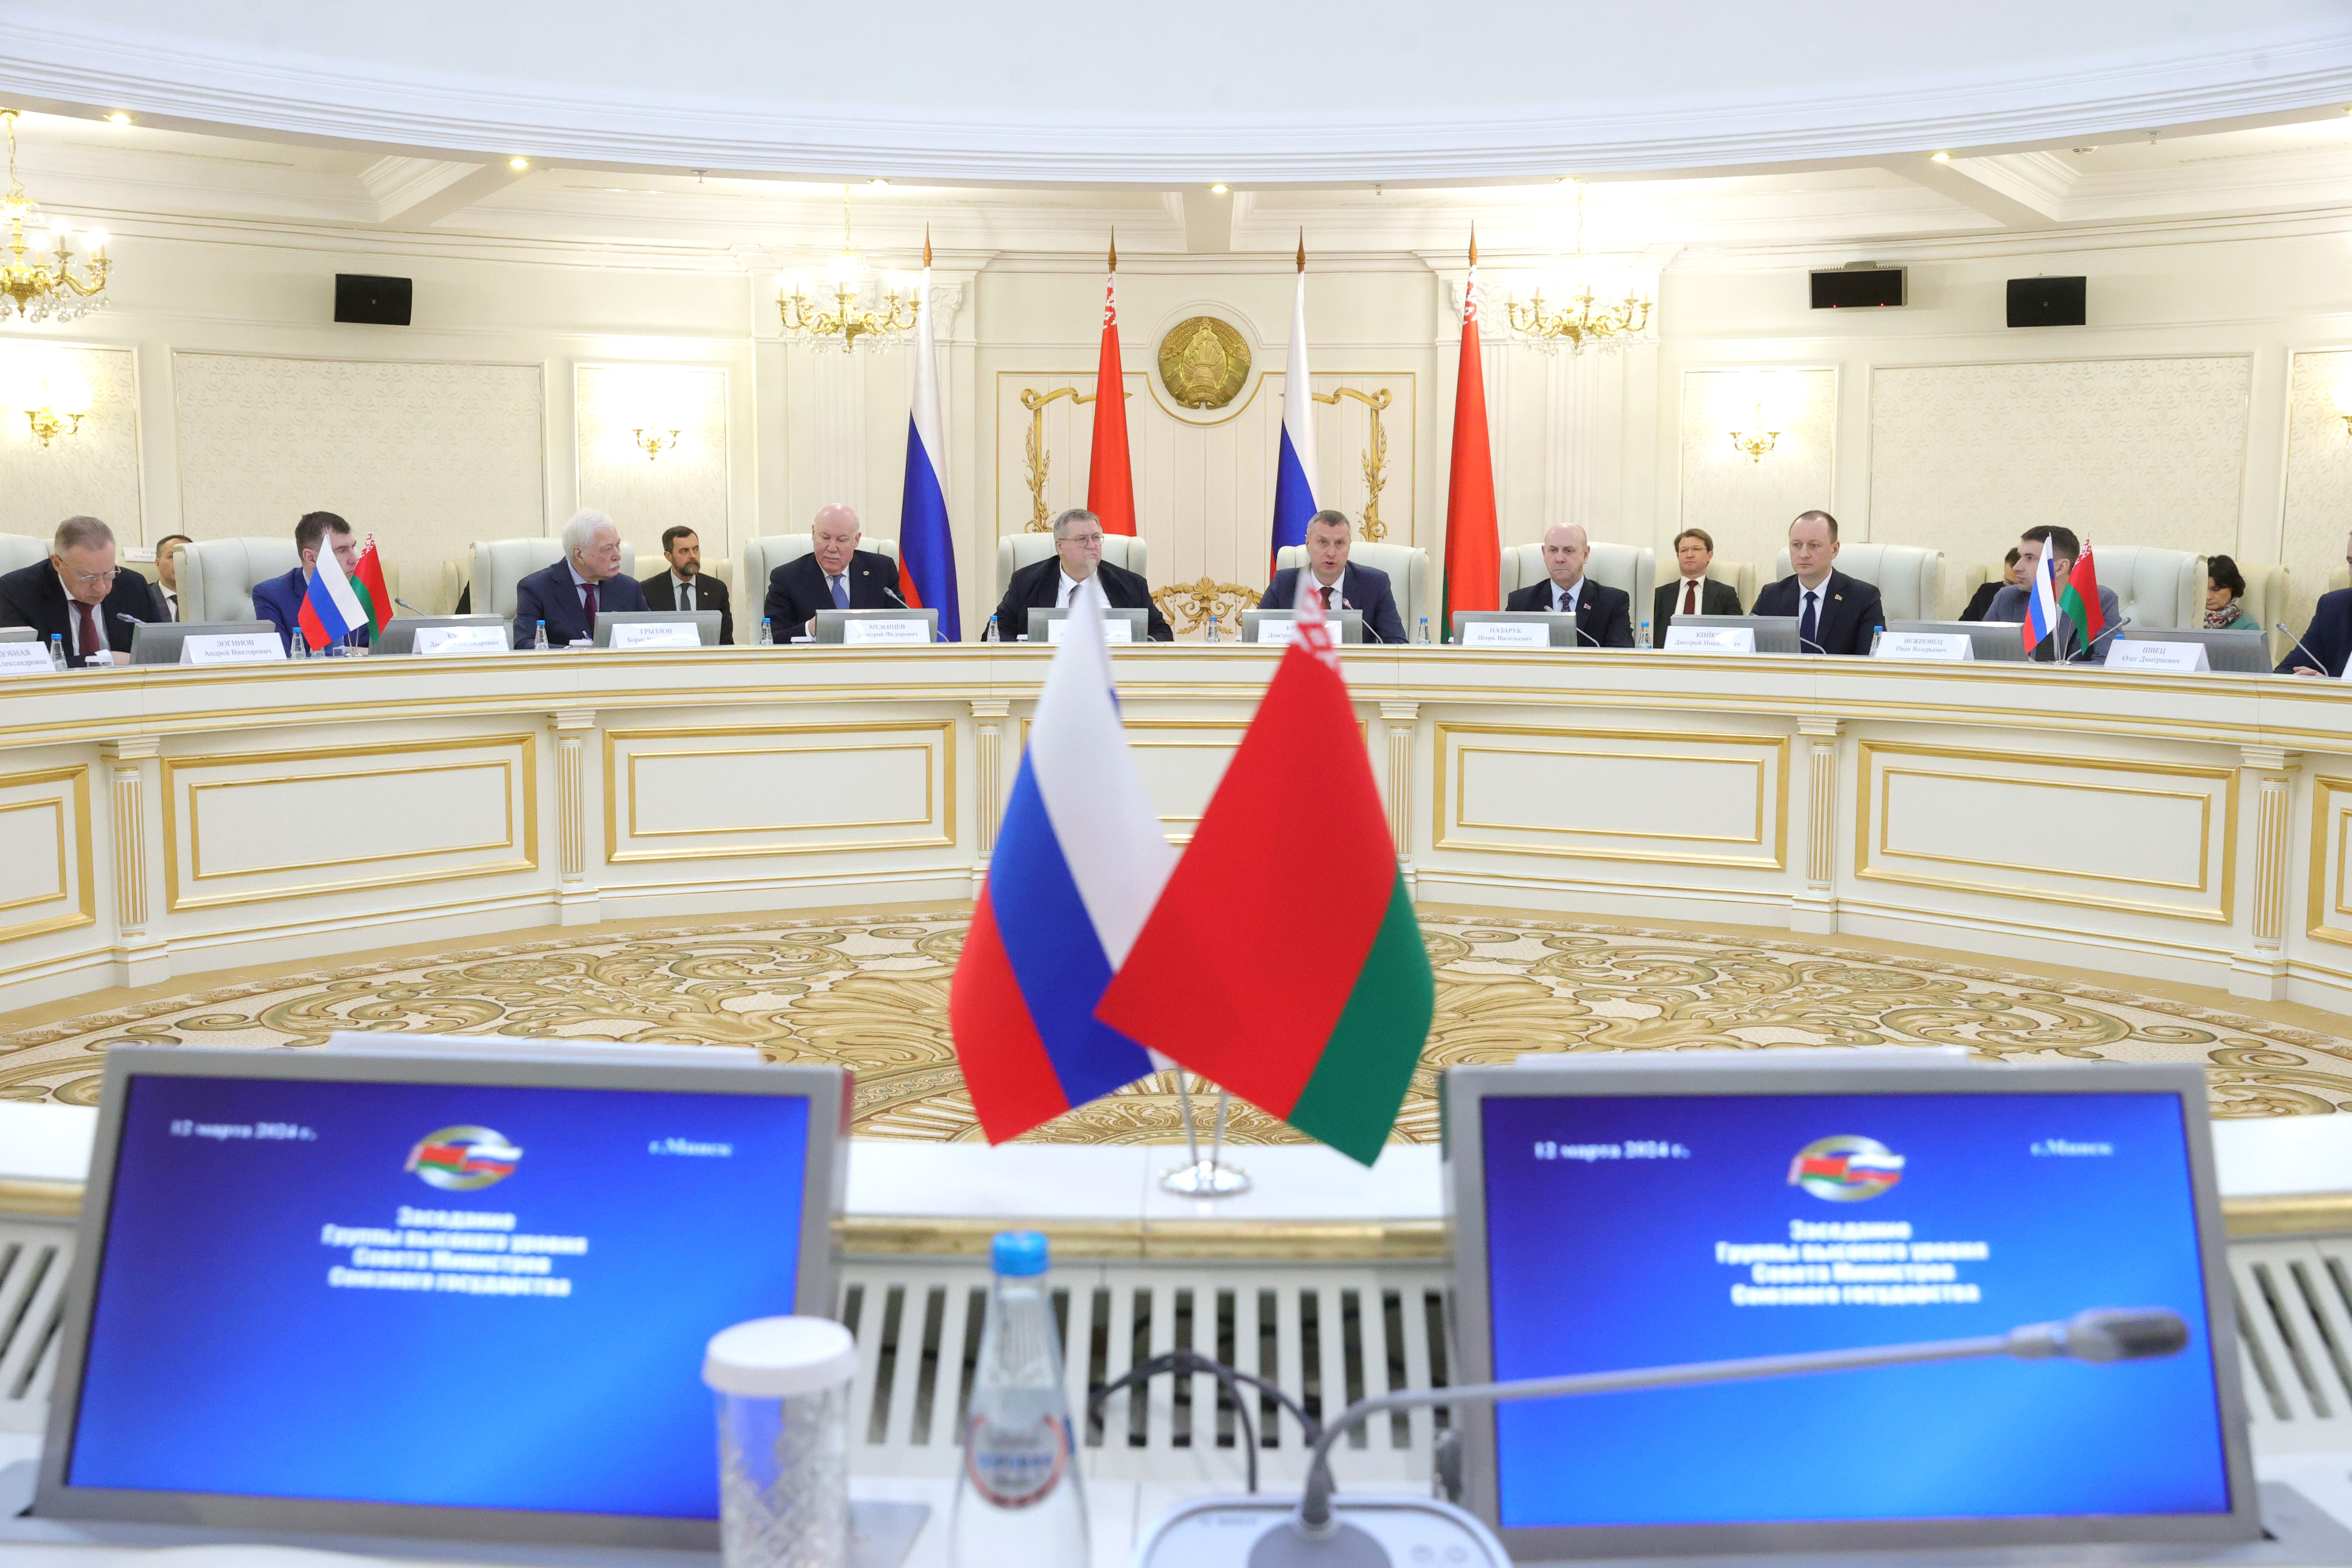 Мезенцев: в Минске обсуждены 17 вопросов содержательного взаимодействия 